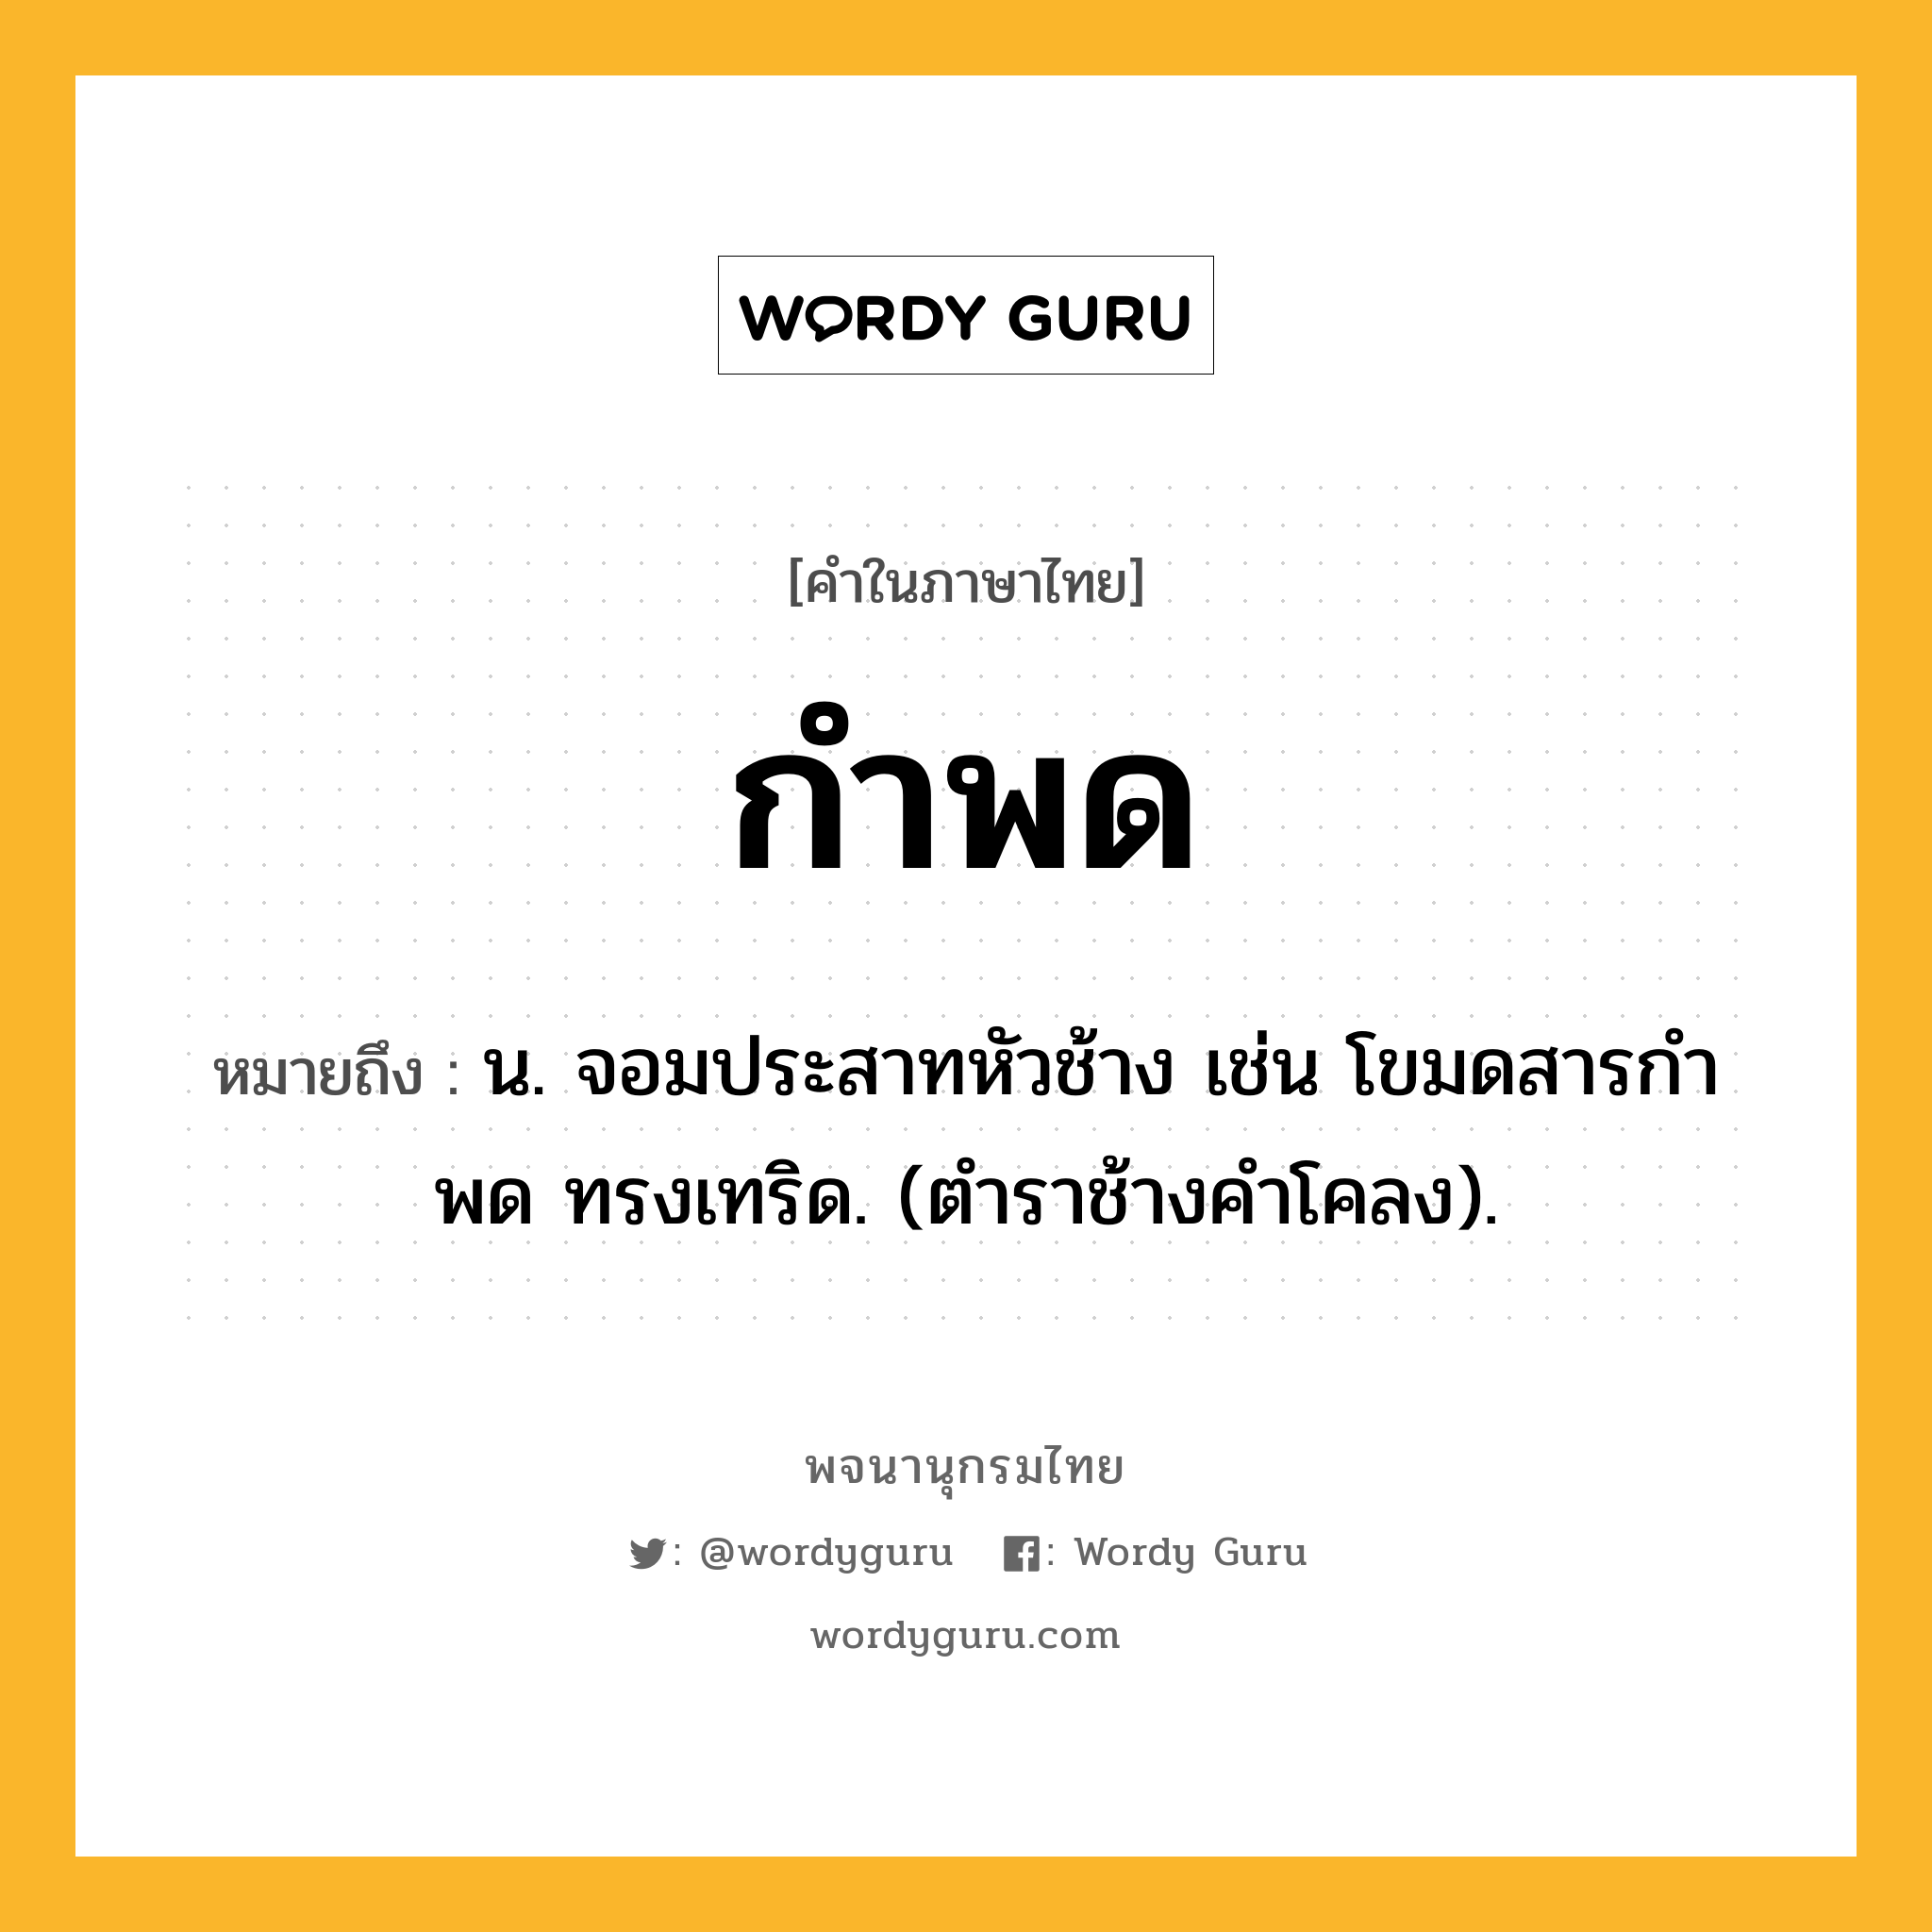 กำพด หมายถึงอะไร?, คำในภาษาไทย กำพด หมายถึง น. จอมประสาทหัวช้าง เช่น โขมดสารกําพด ทรงเทริด. (ตําราช้างคําโคลง).